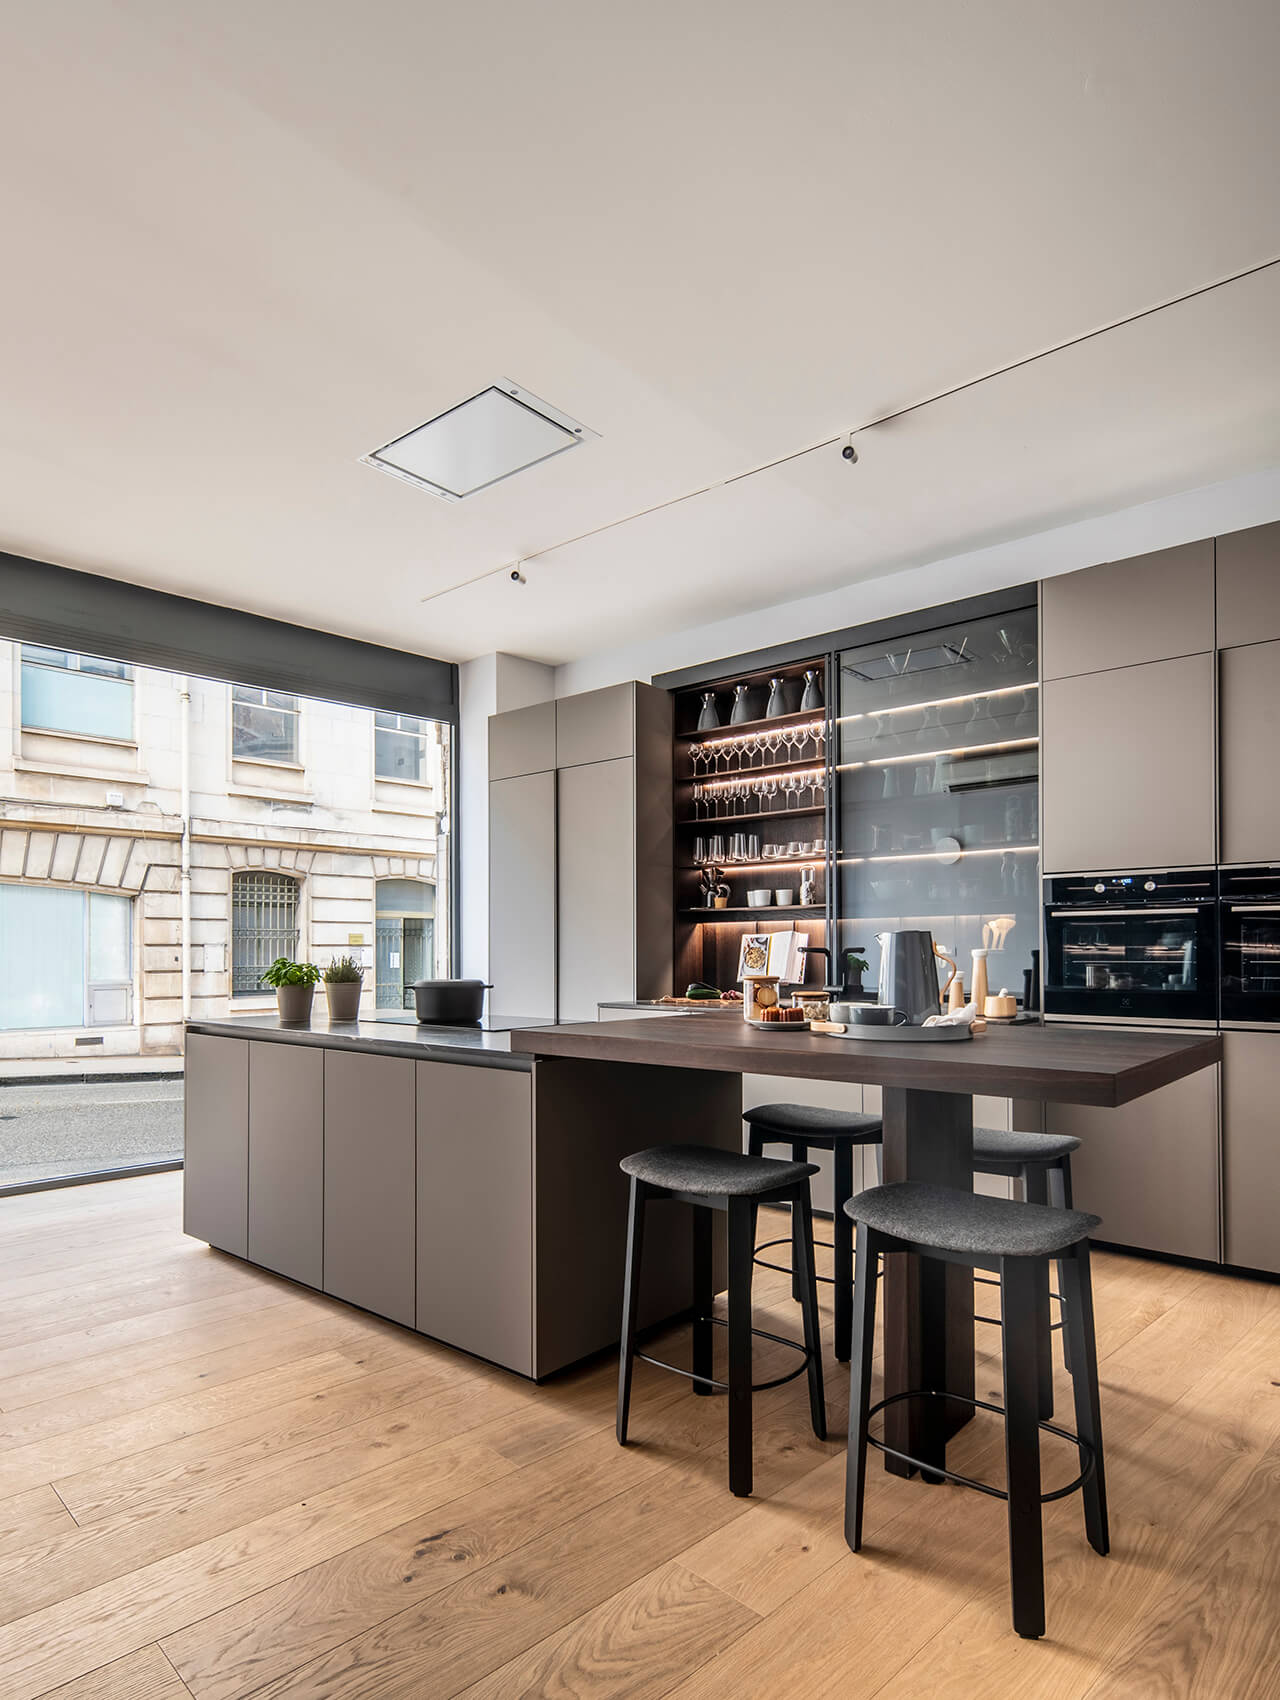 Grey Santos kitchen with worktop in Eba Auch in France